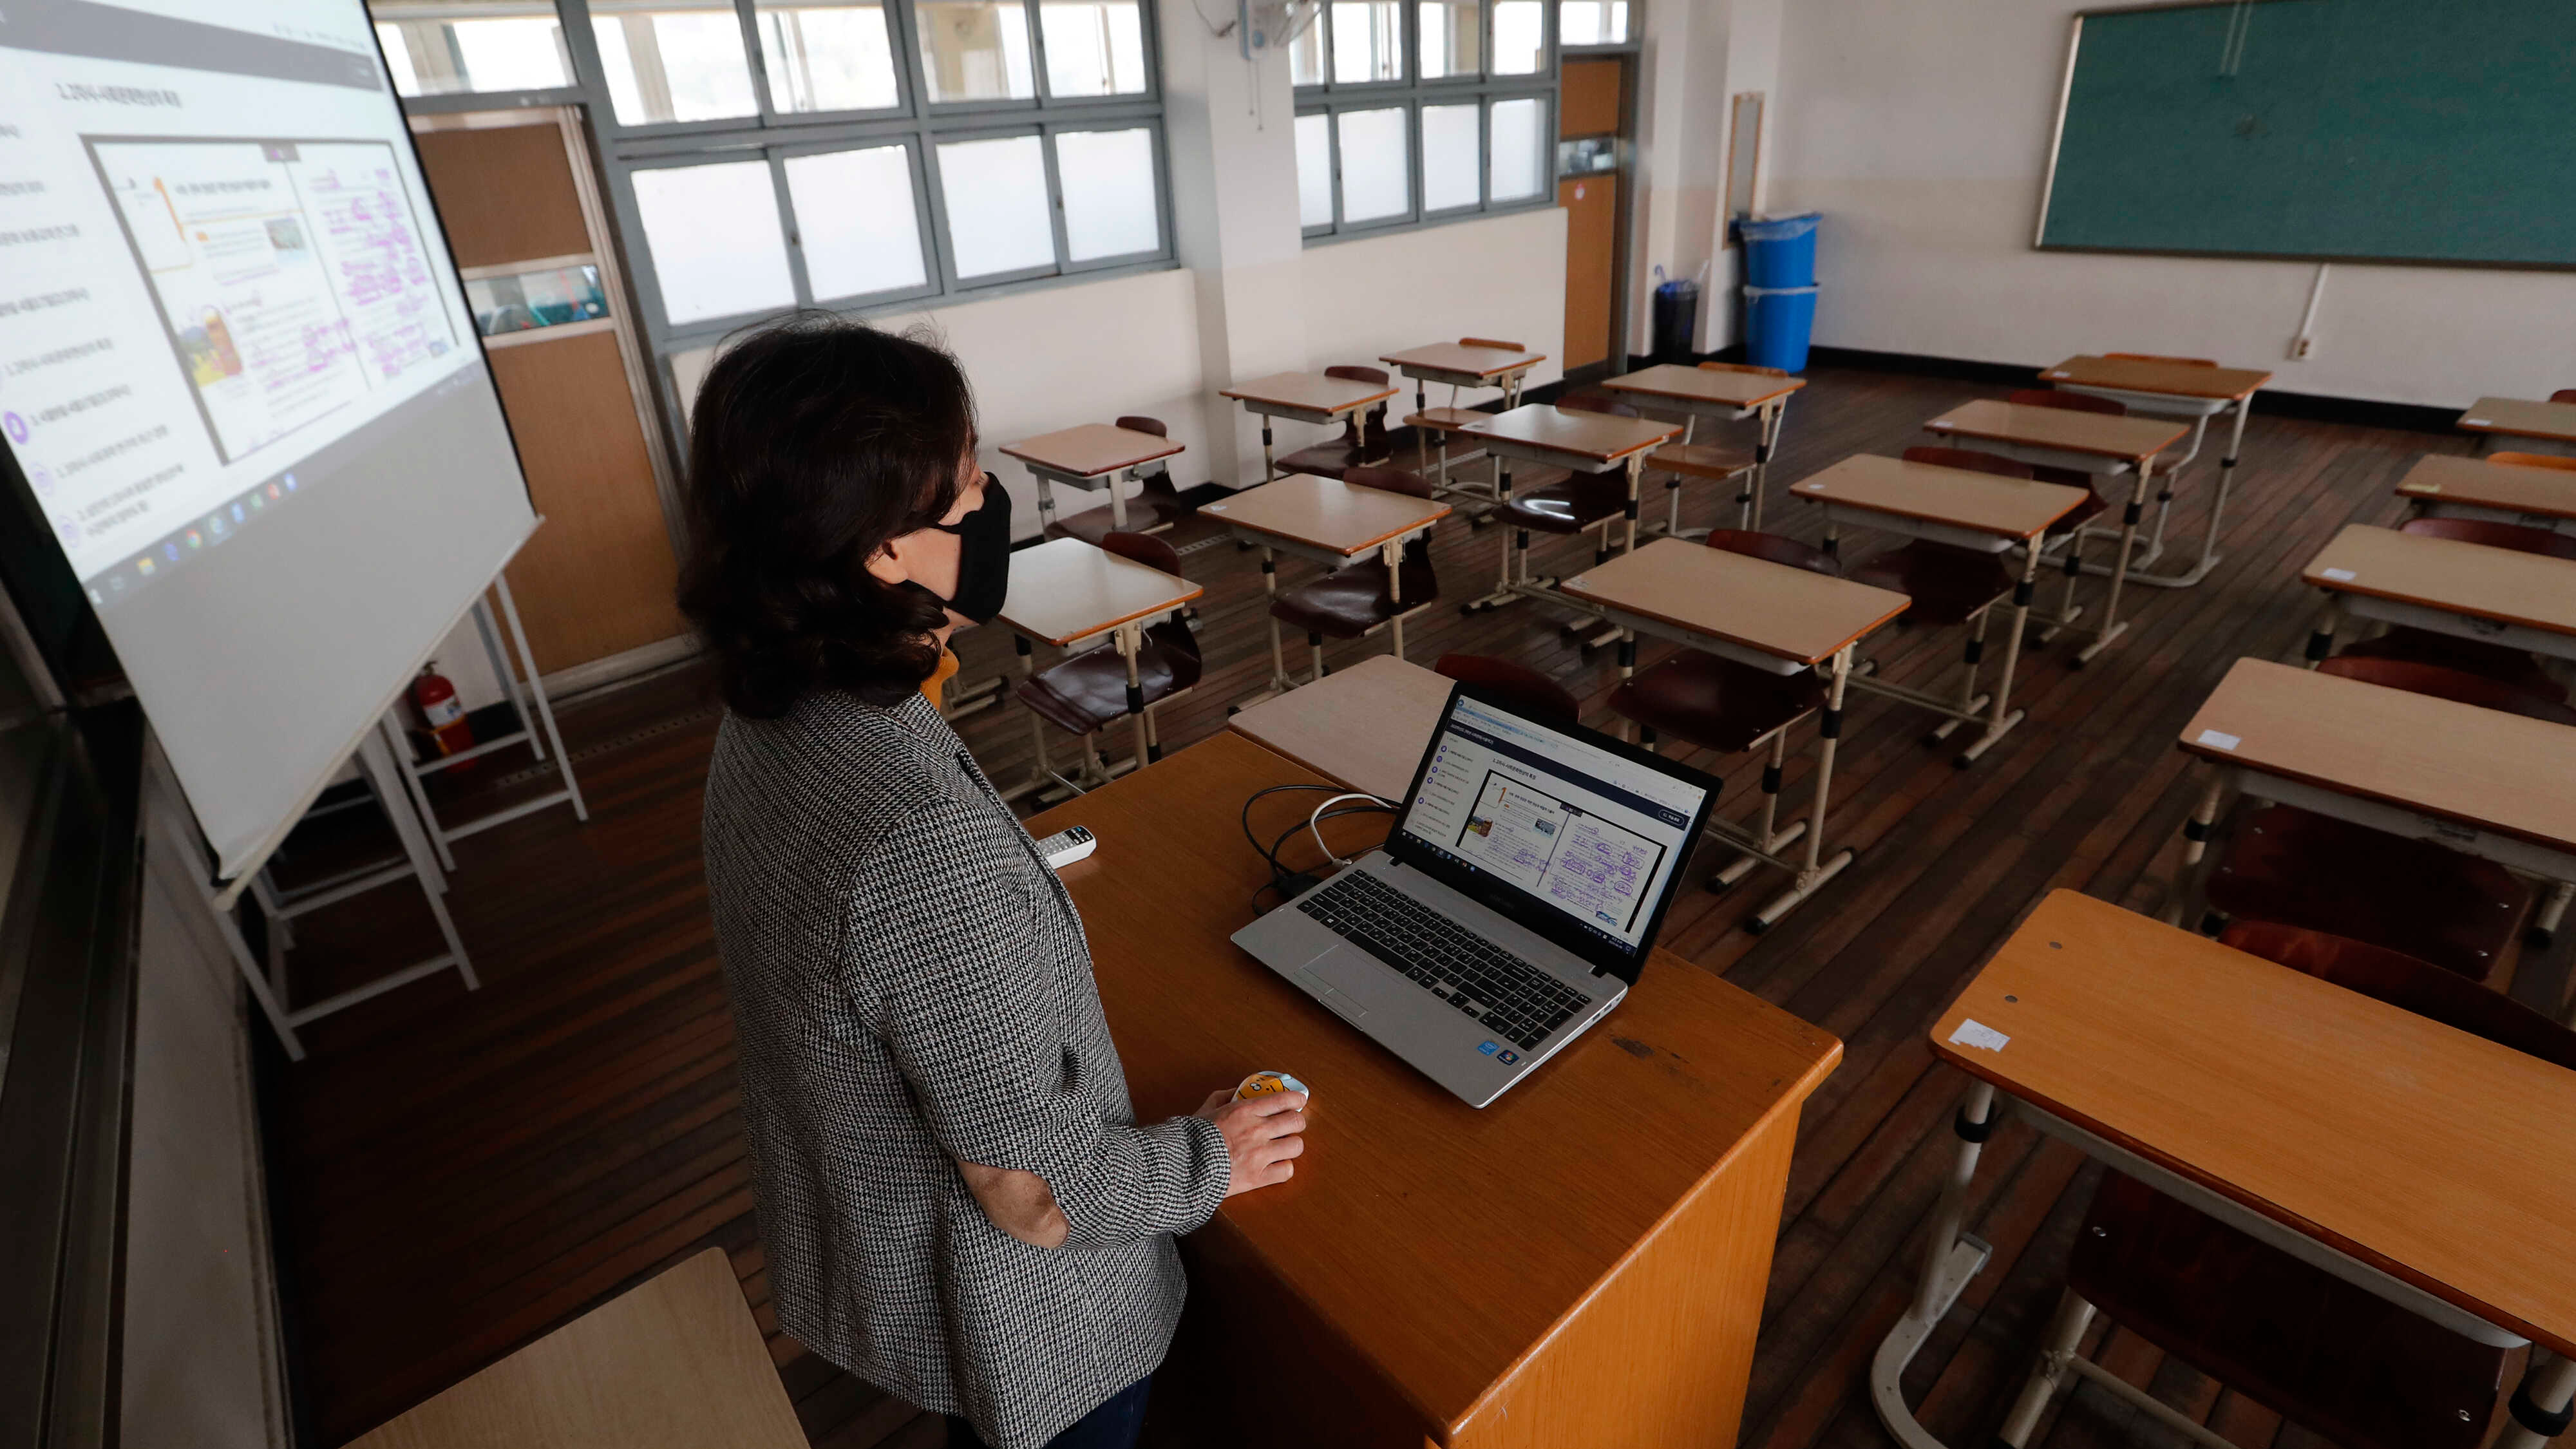 "لا لإغلاق المدارس" مُباردة أردنية لإبقاء التعلم وجاهياً خلال فترة كورونا - فيديو